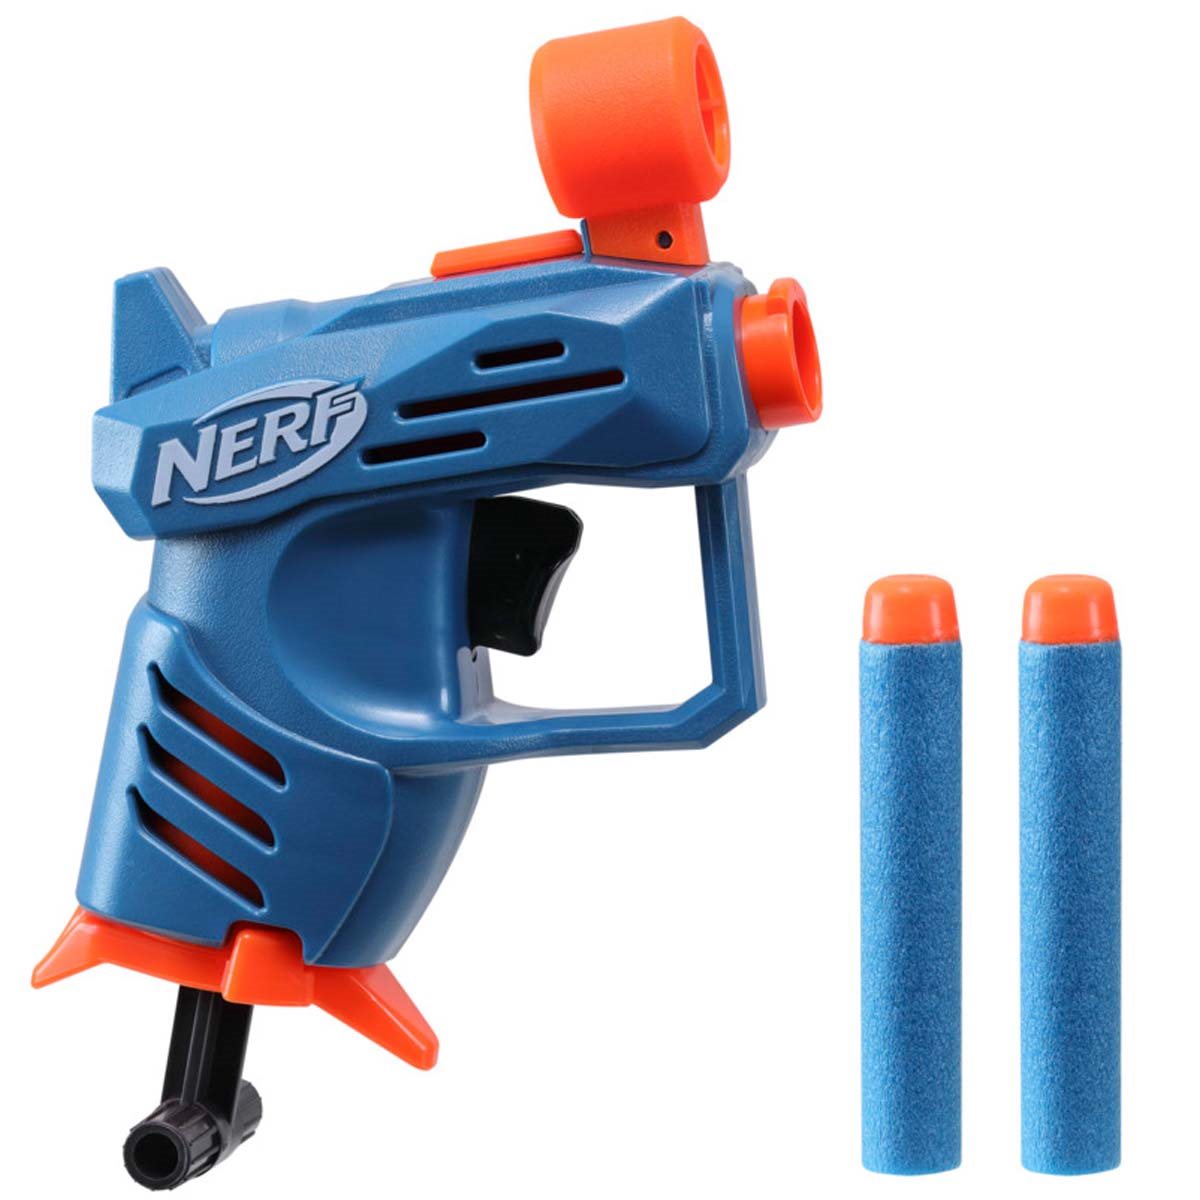 NERF软弹枪守望先锋堡垒之夜微缩儿童玩具JOLT软弹发射器 散货